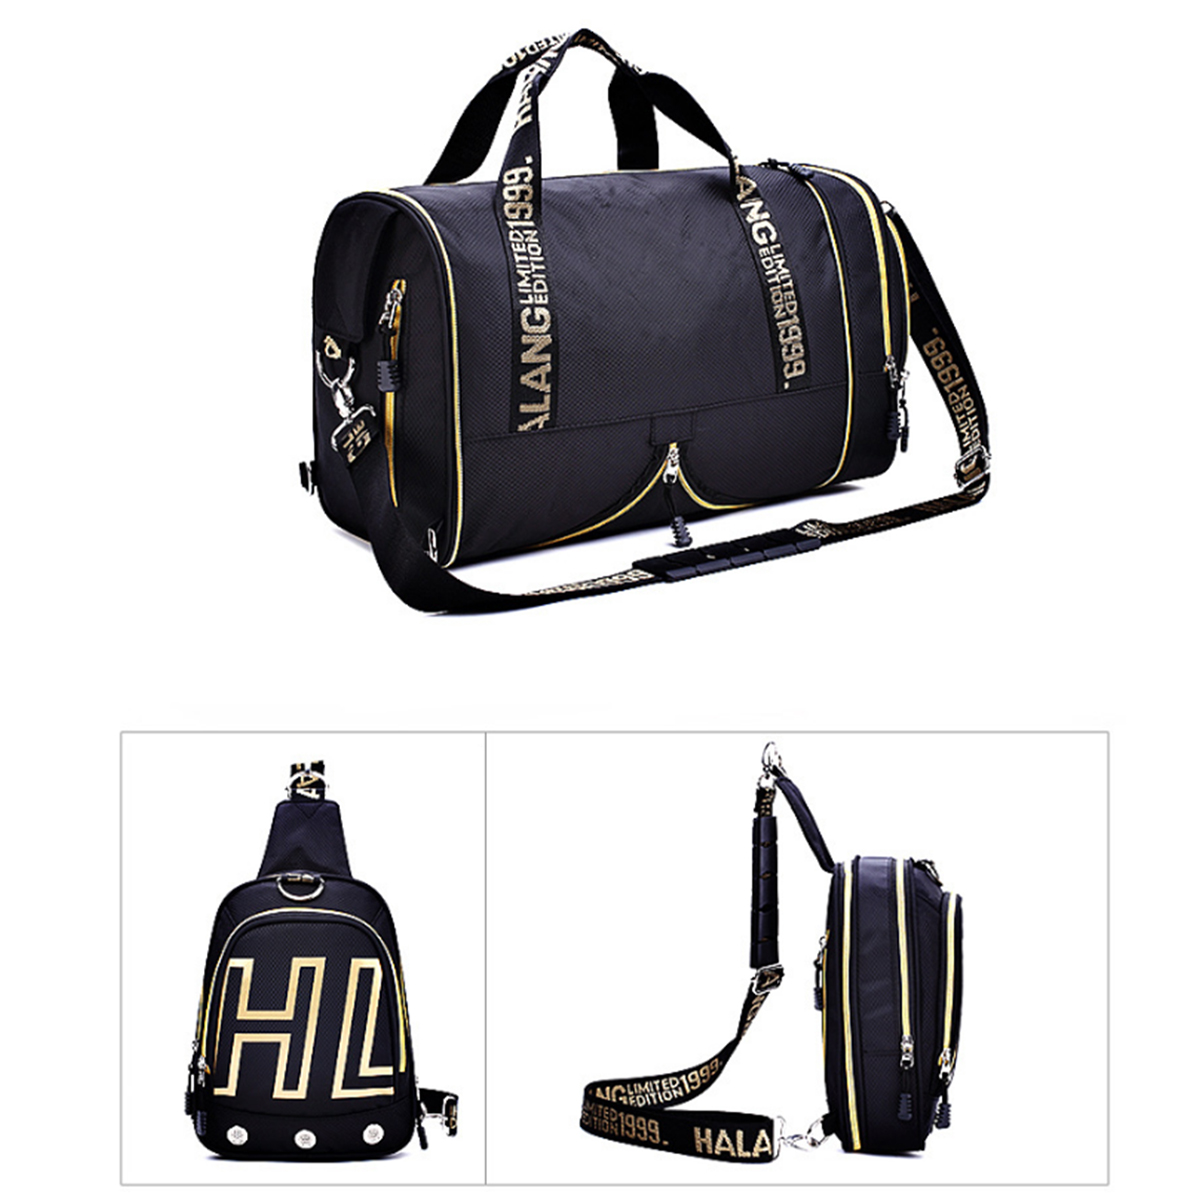 

KALOAD 2 in 1 Foldable Yoga Bag Chest Bag Outdoor Sports Fitness Shoulder Bag Backbag